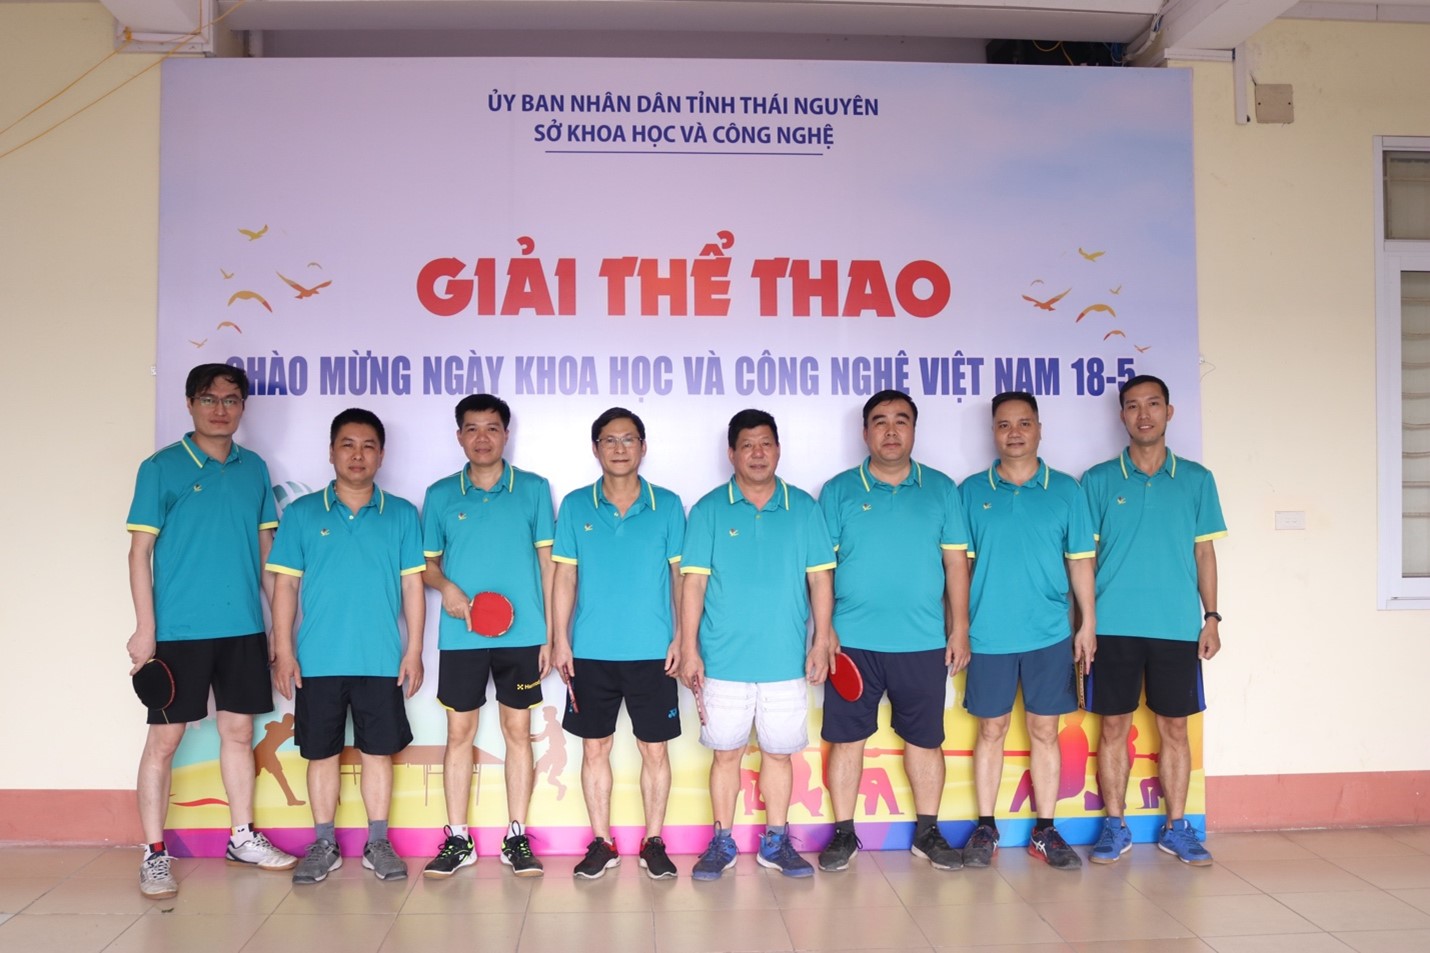 Giải thể thao chào mừng Ngày Khoa học và Công nghệ Việt Nam 18-5 -0